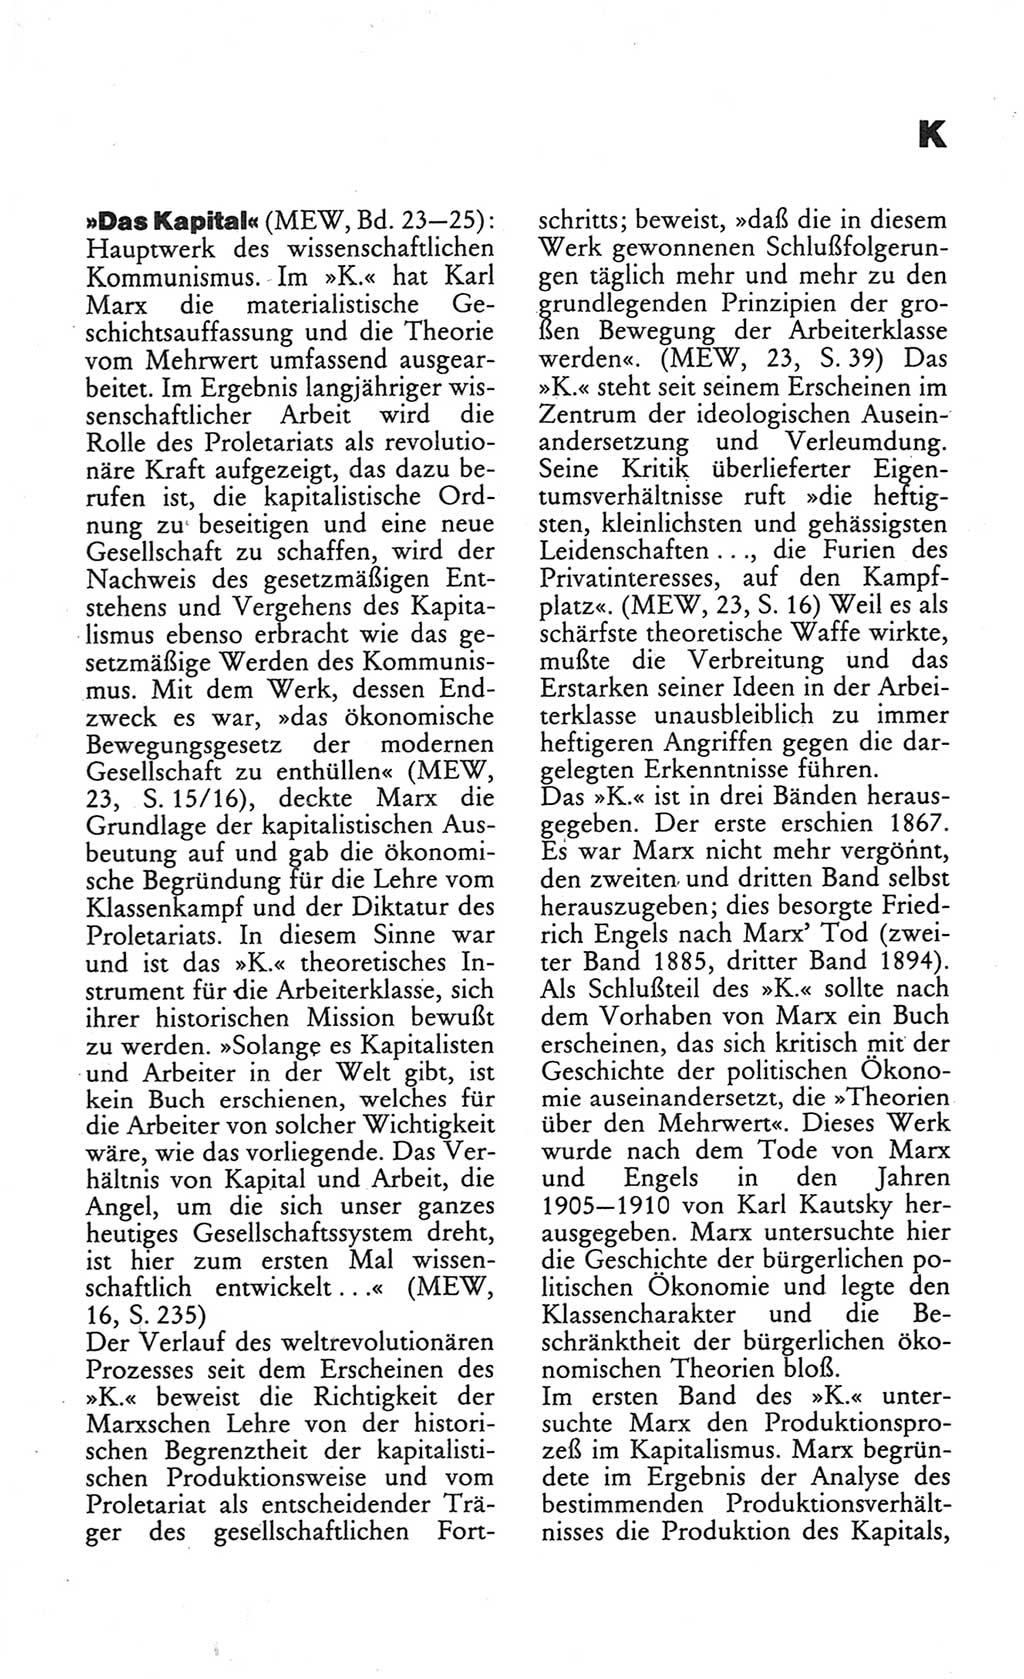 Wörterbuch des wissenschaftlichen Kommunismus [Deutsche Demokratische Republik (DDR)] 1984, Seite 179 (Wb. wiss. Komm. DDR 1984, S. 179)